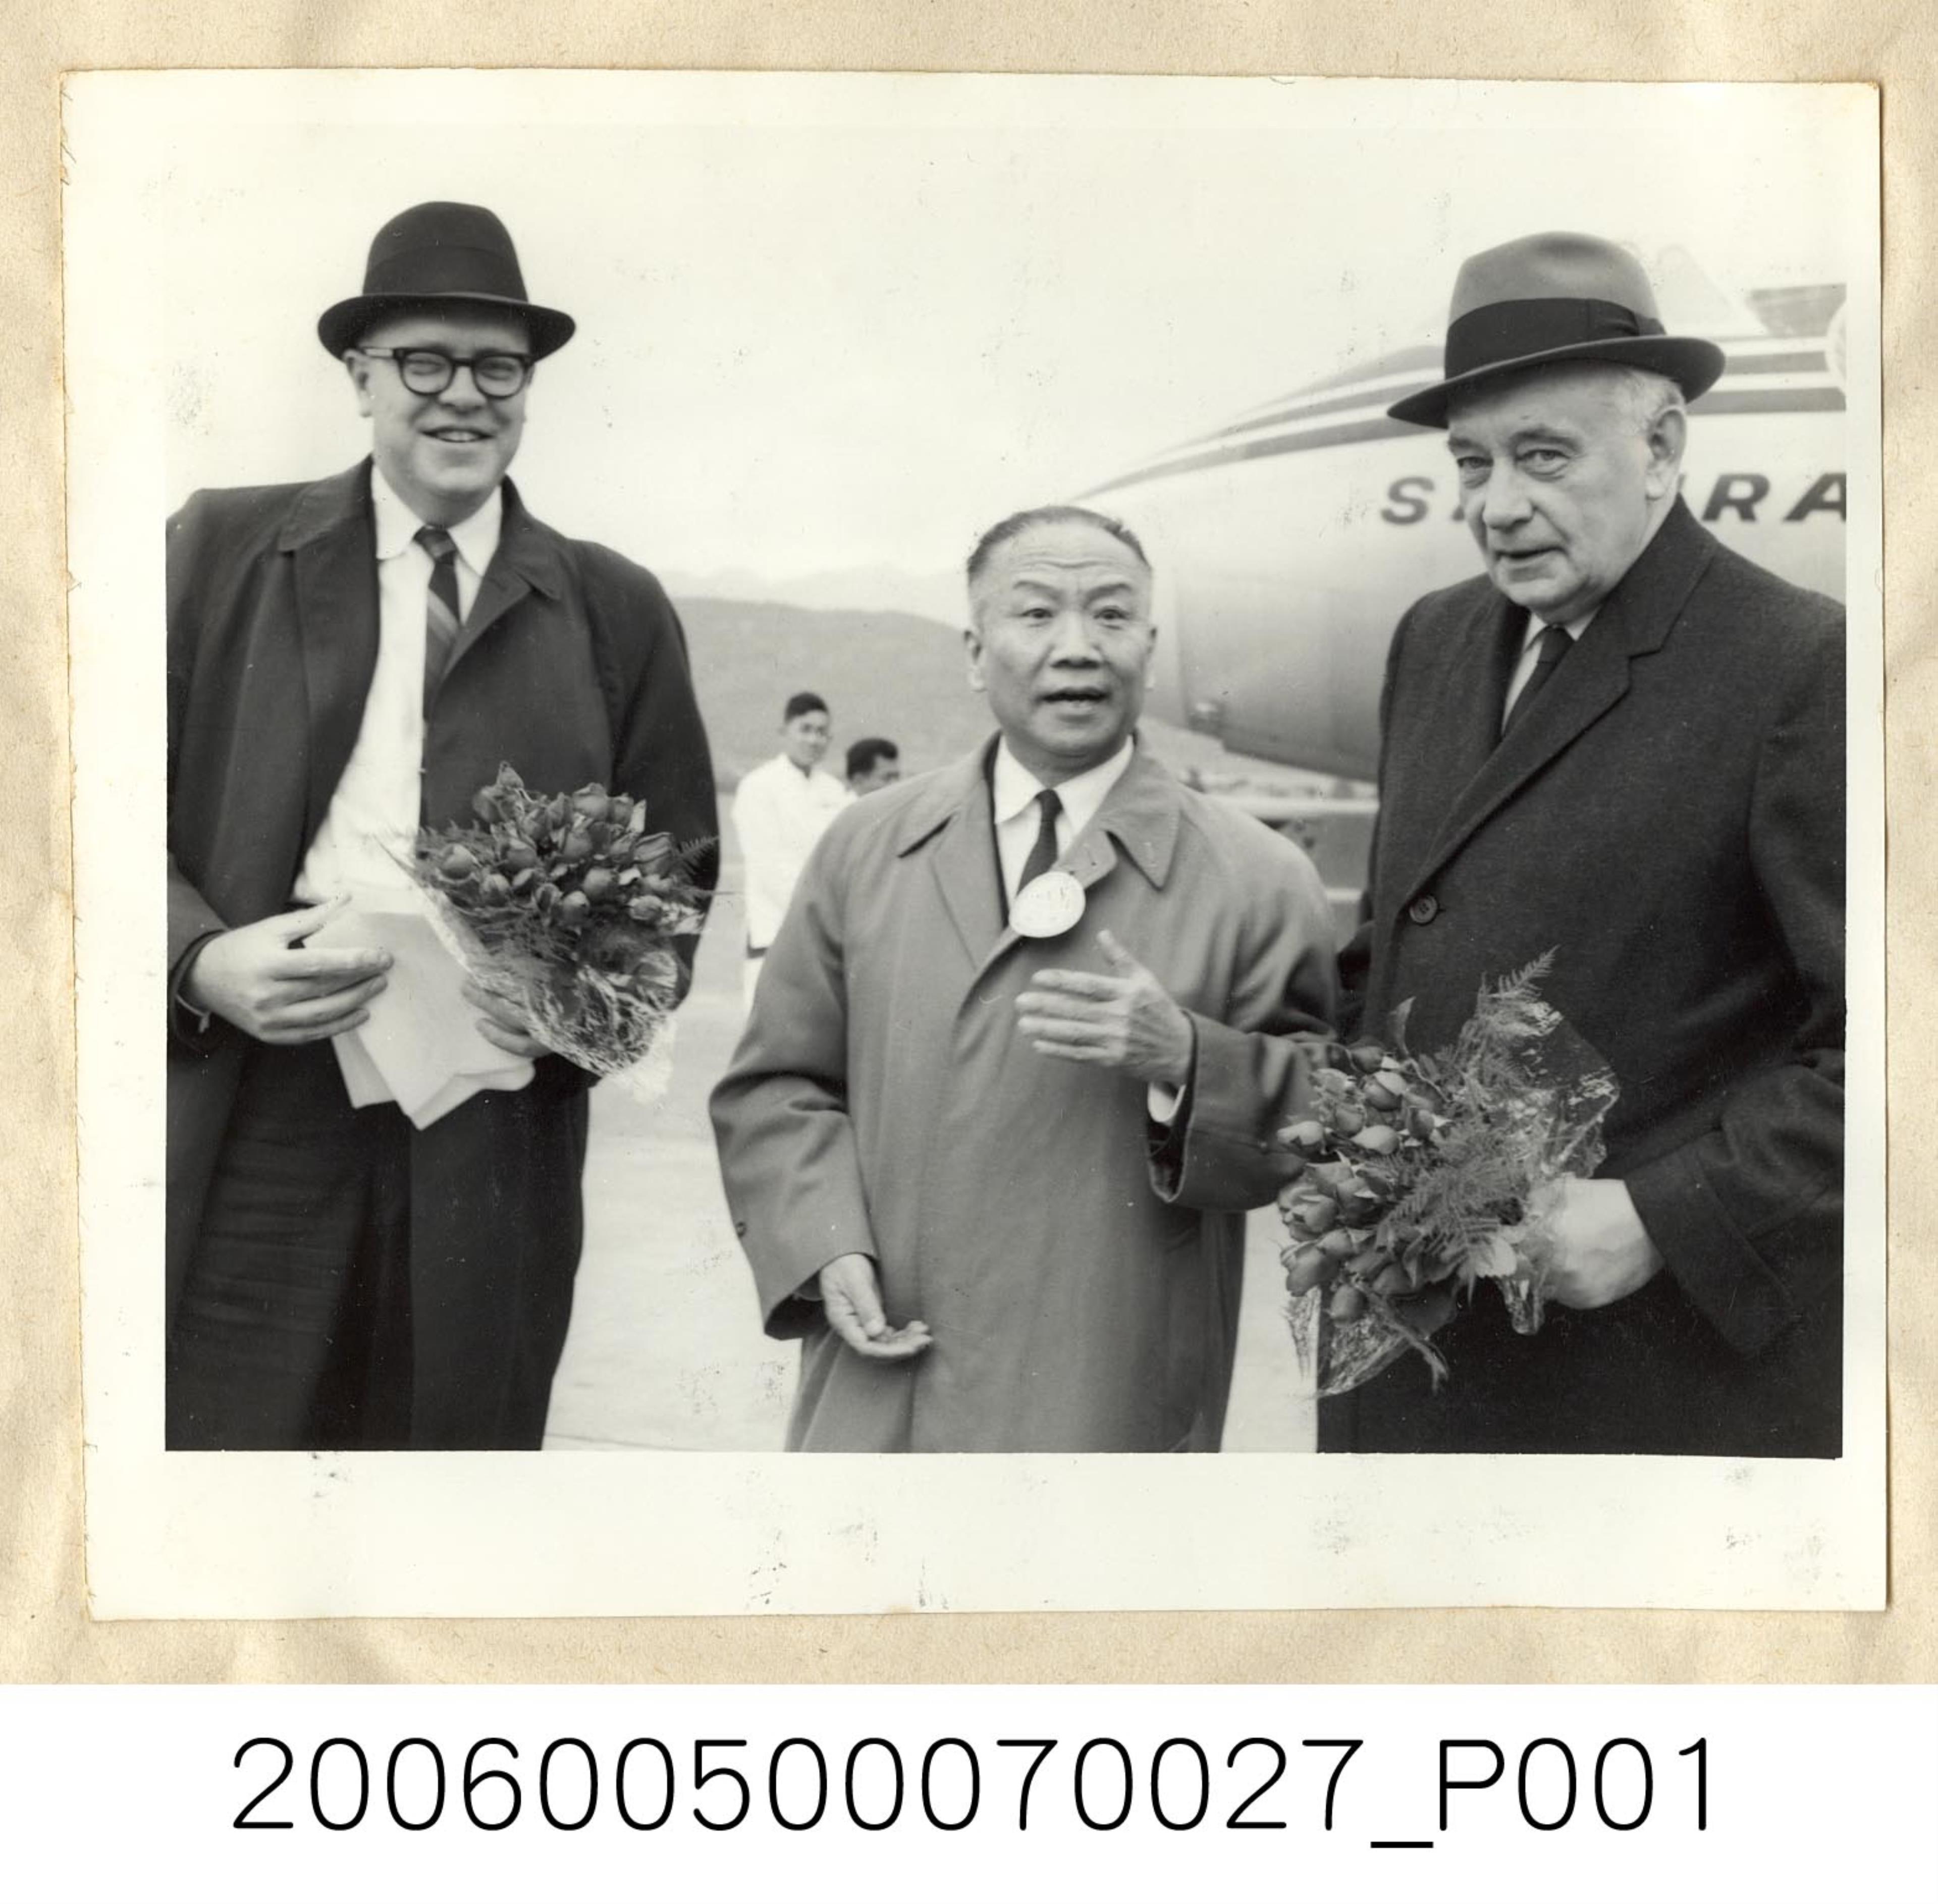 《華僑通訊社新聞照片集》〈亞盟理事主席谷正綱在機場歡迎來賓〉 (共1張)